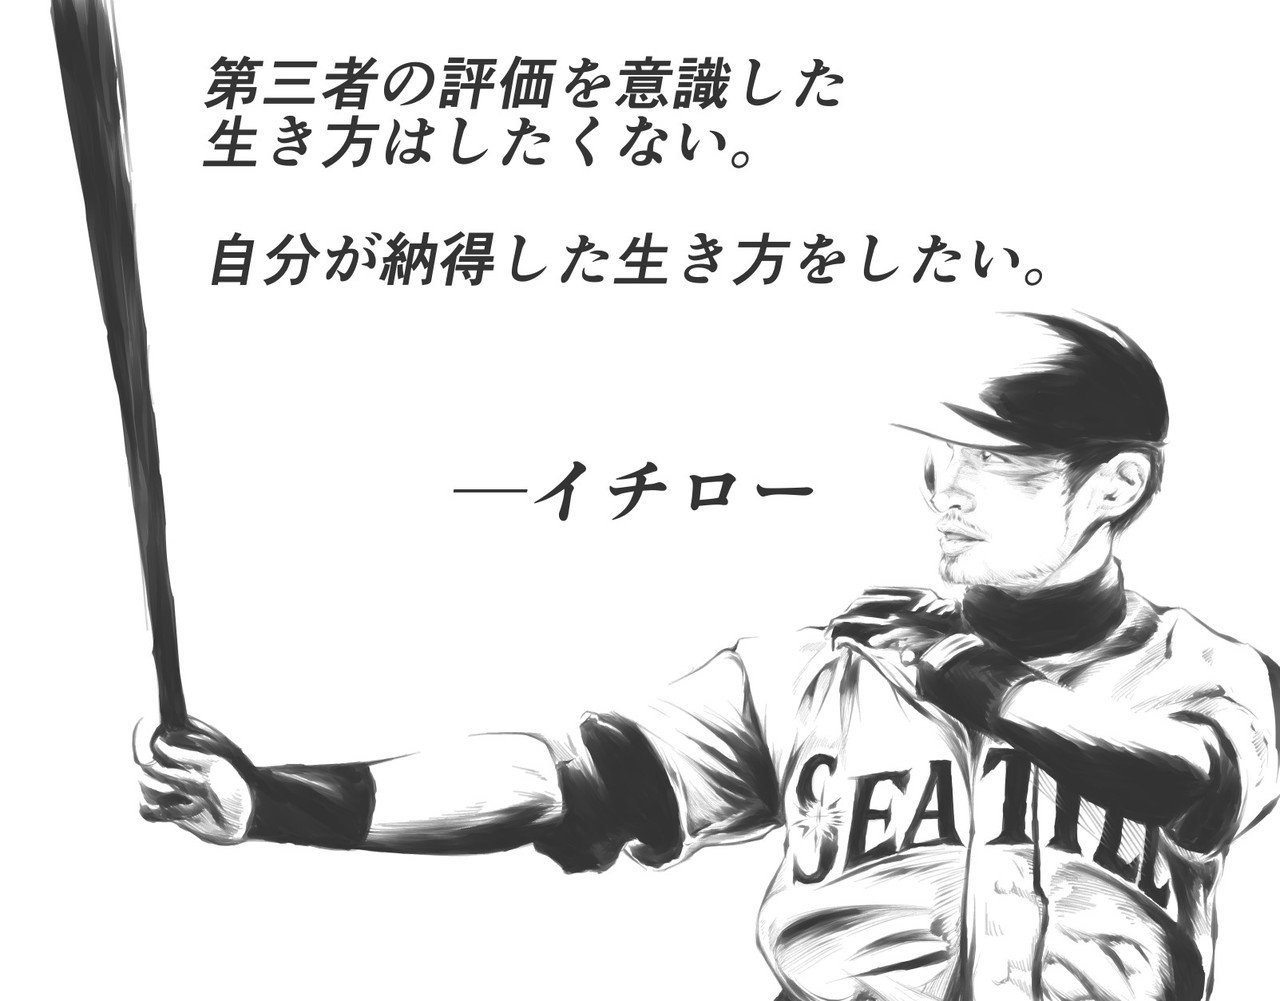 勇気が出る名言 イチロー選手 Hashiya 漫画家 イラストレーター Note